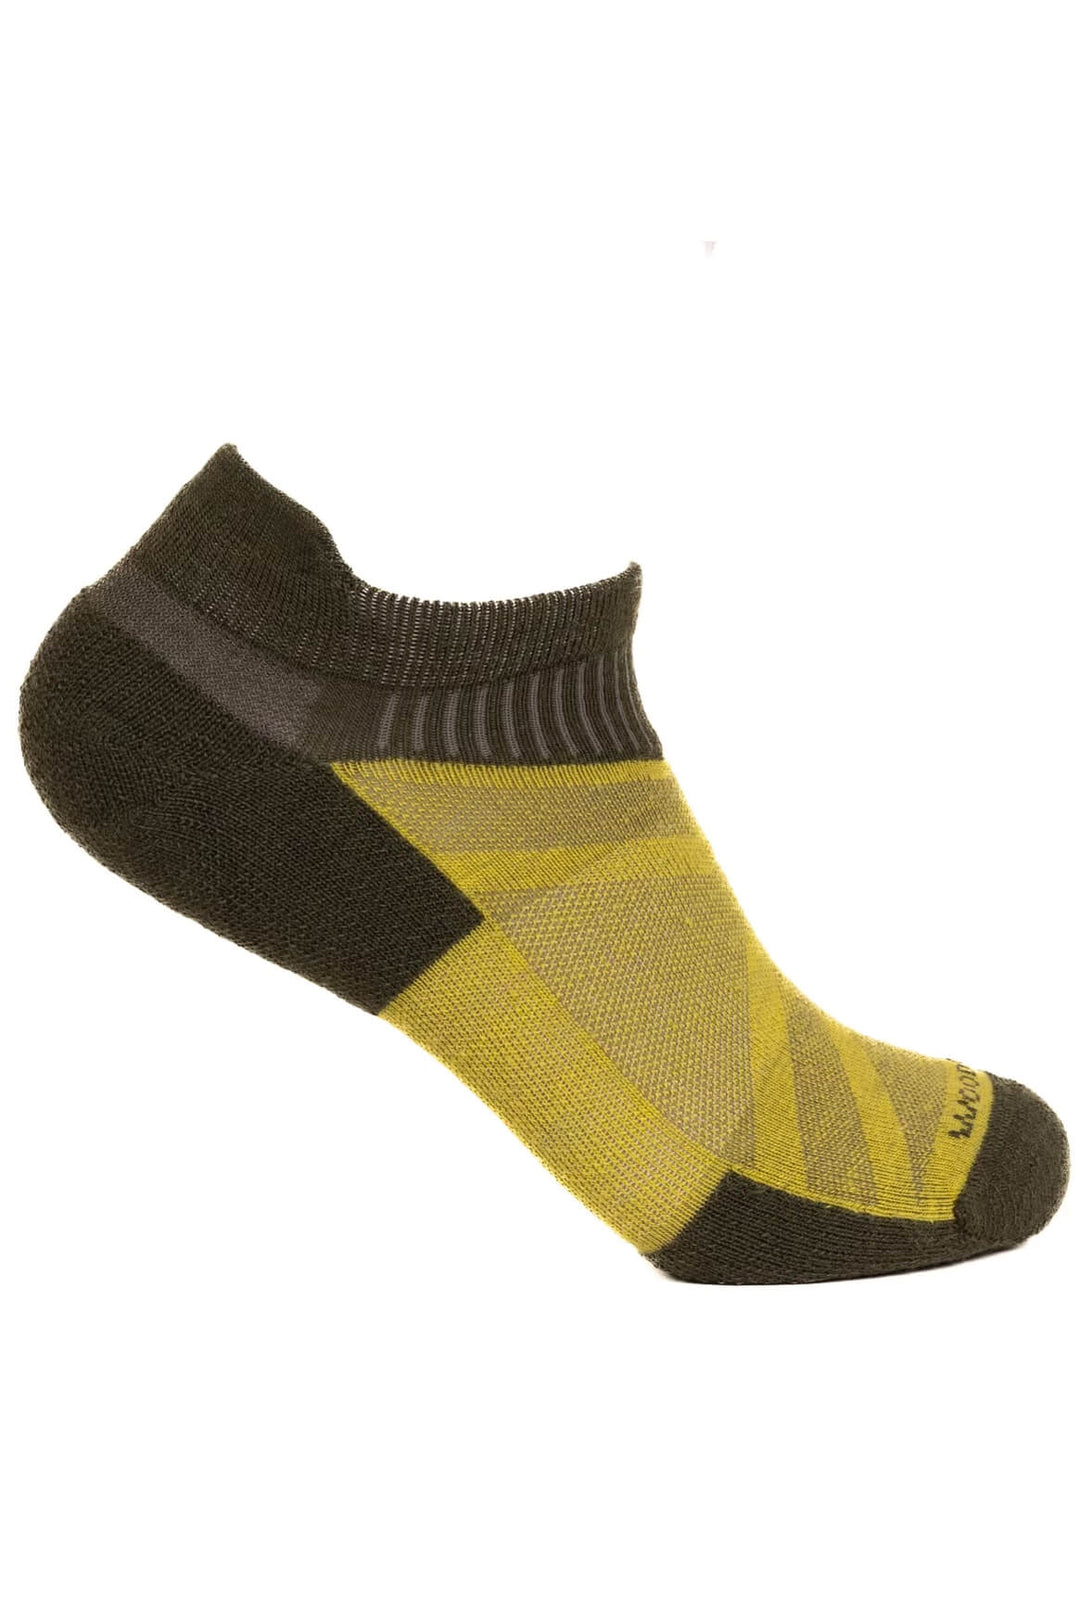 Sheeple Merino Ankle Sock - Ponderosa - Woodroad Gear Co.